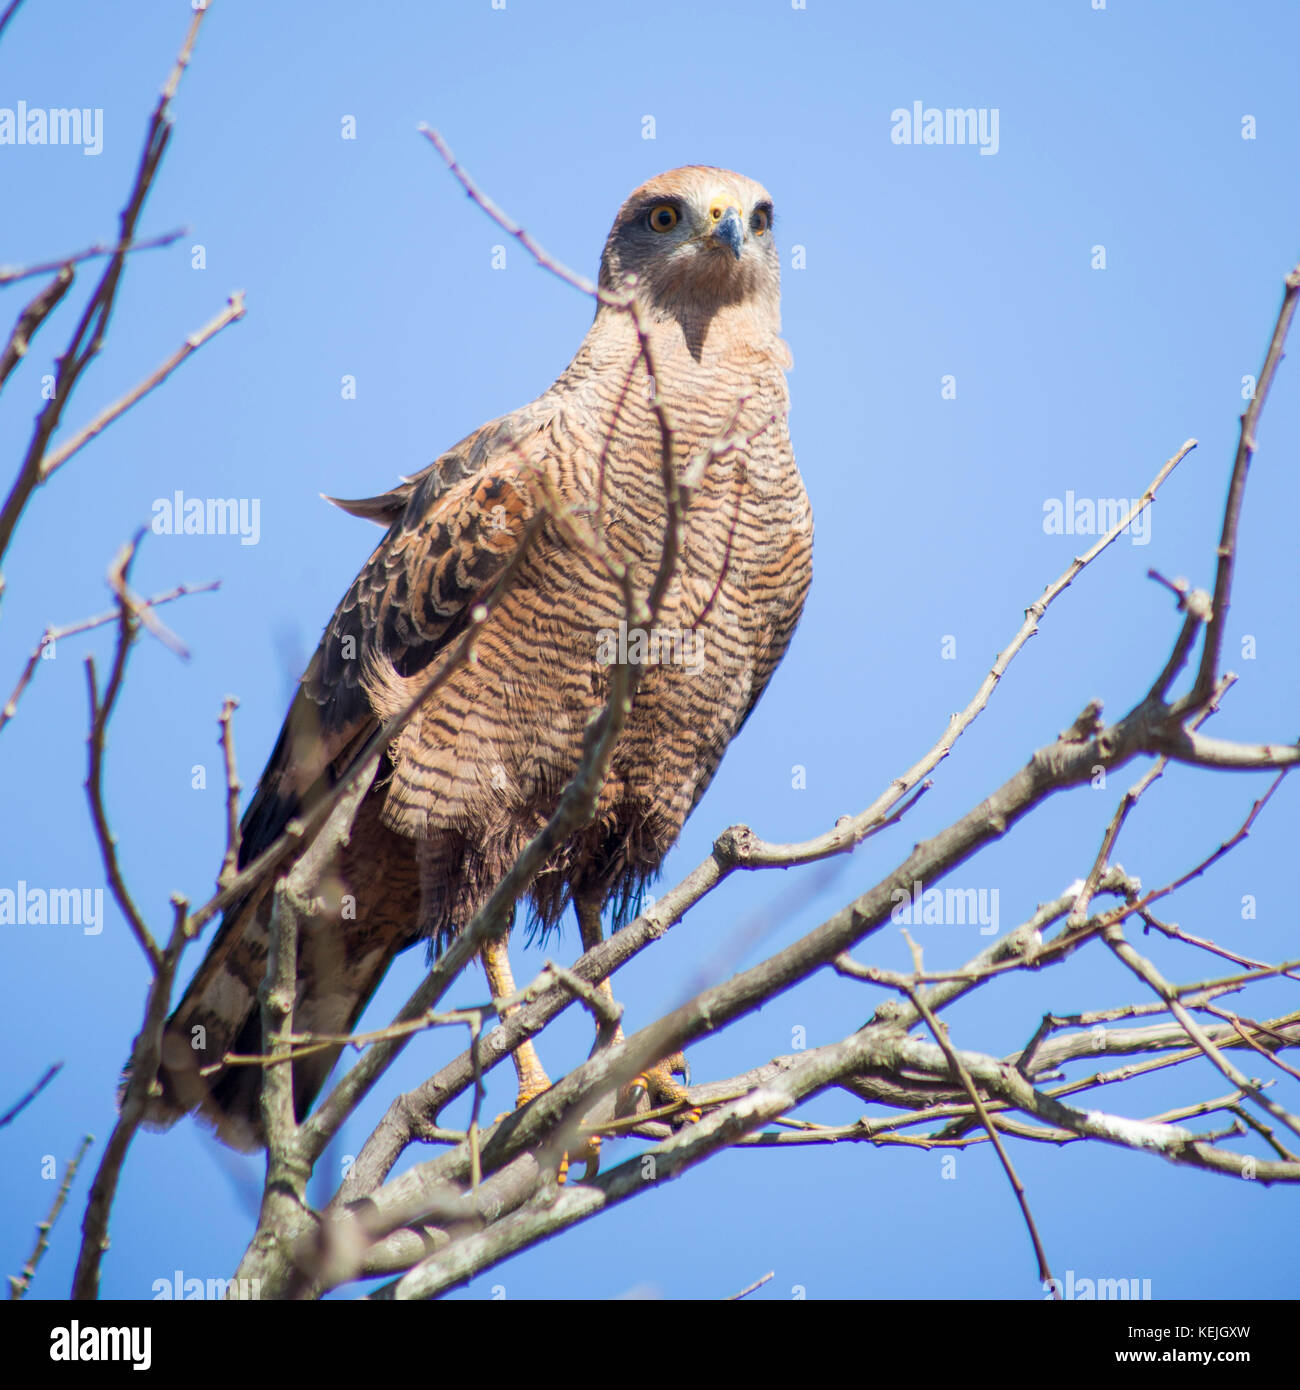 Hawk au sud du Pantanal, Fazenda San Franscisco, ville de Miranda, Mato Grosso do Sul - Brésil Banque D'Images